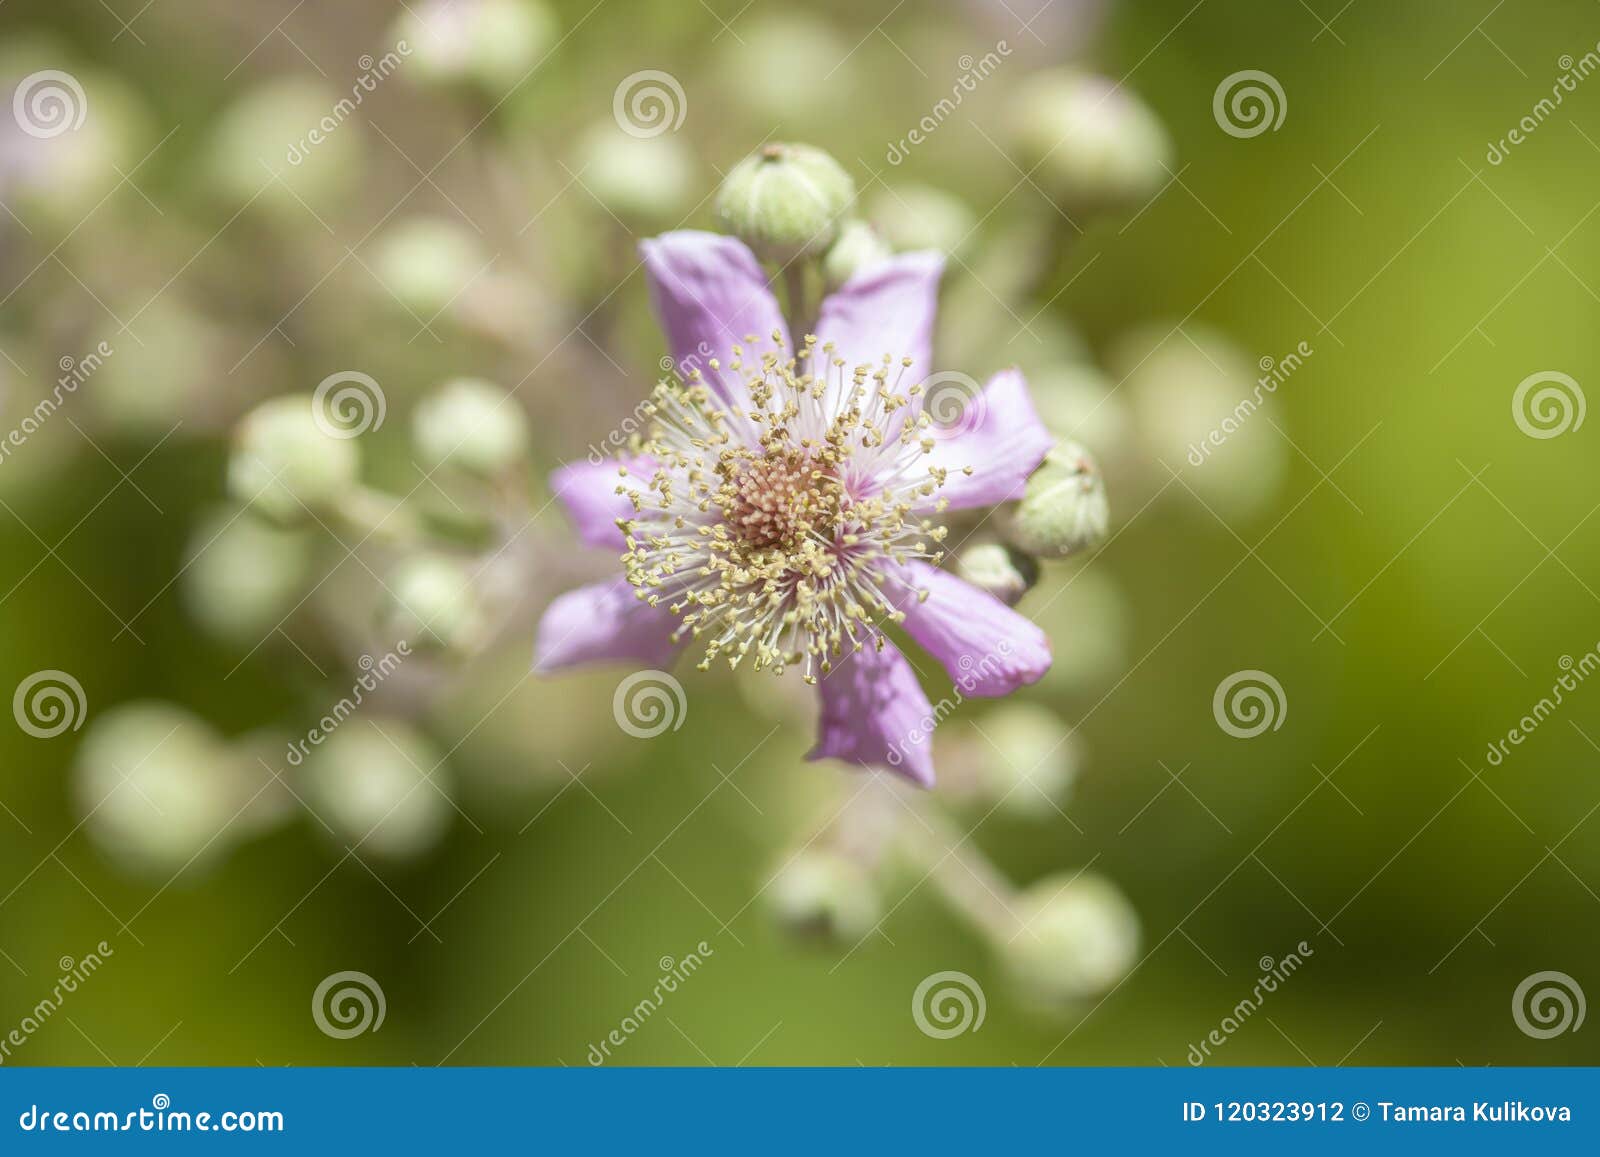 flora of gran canaria - rubus ulmifolius